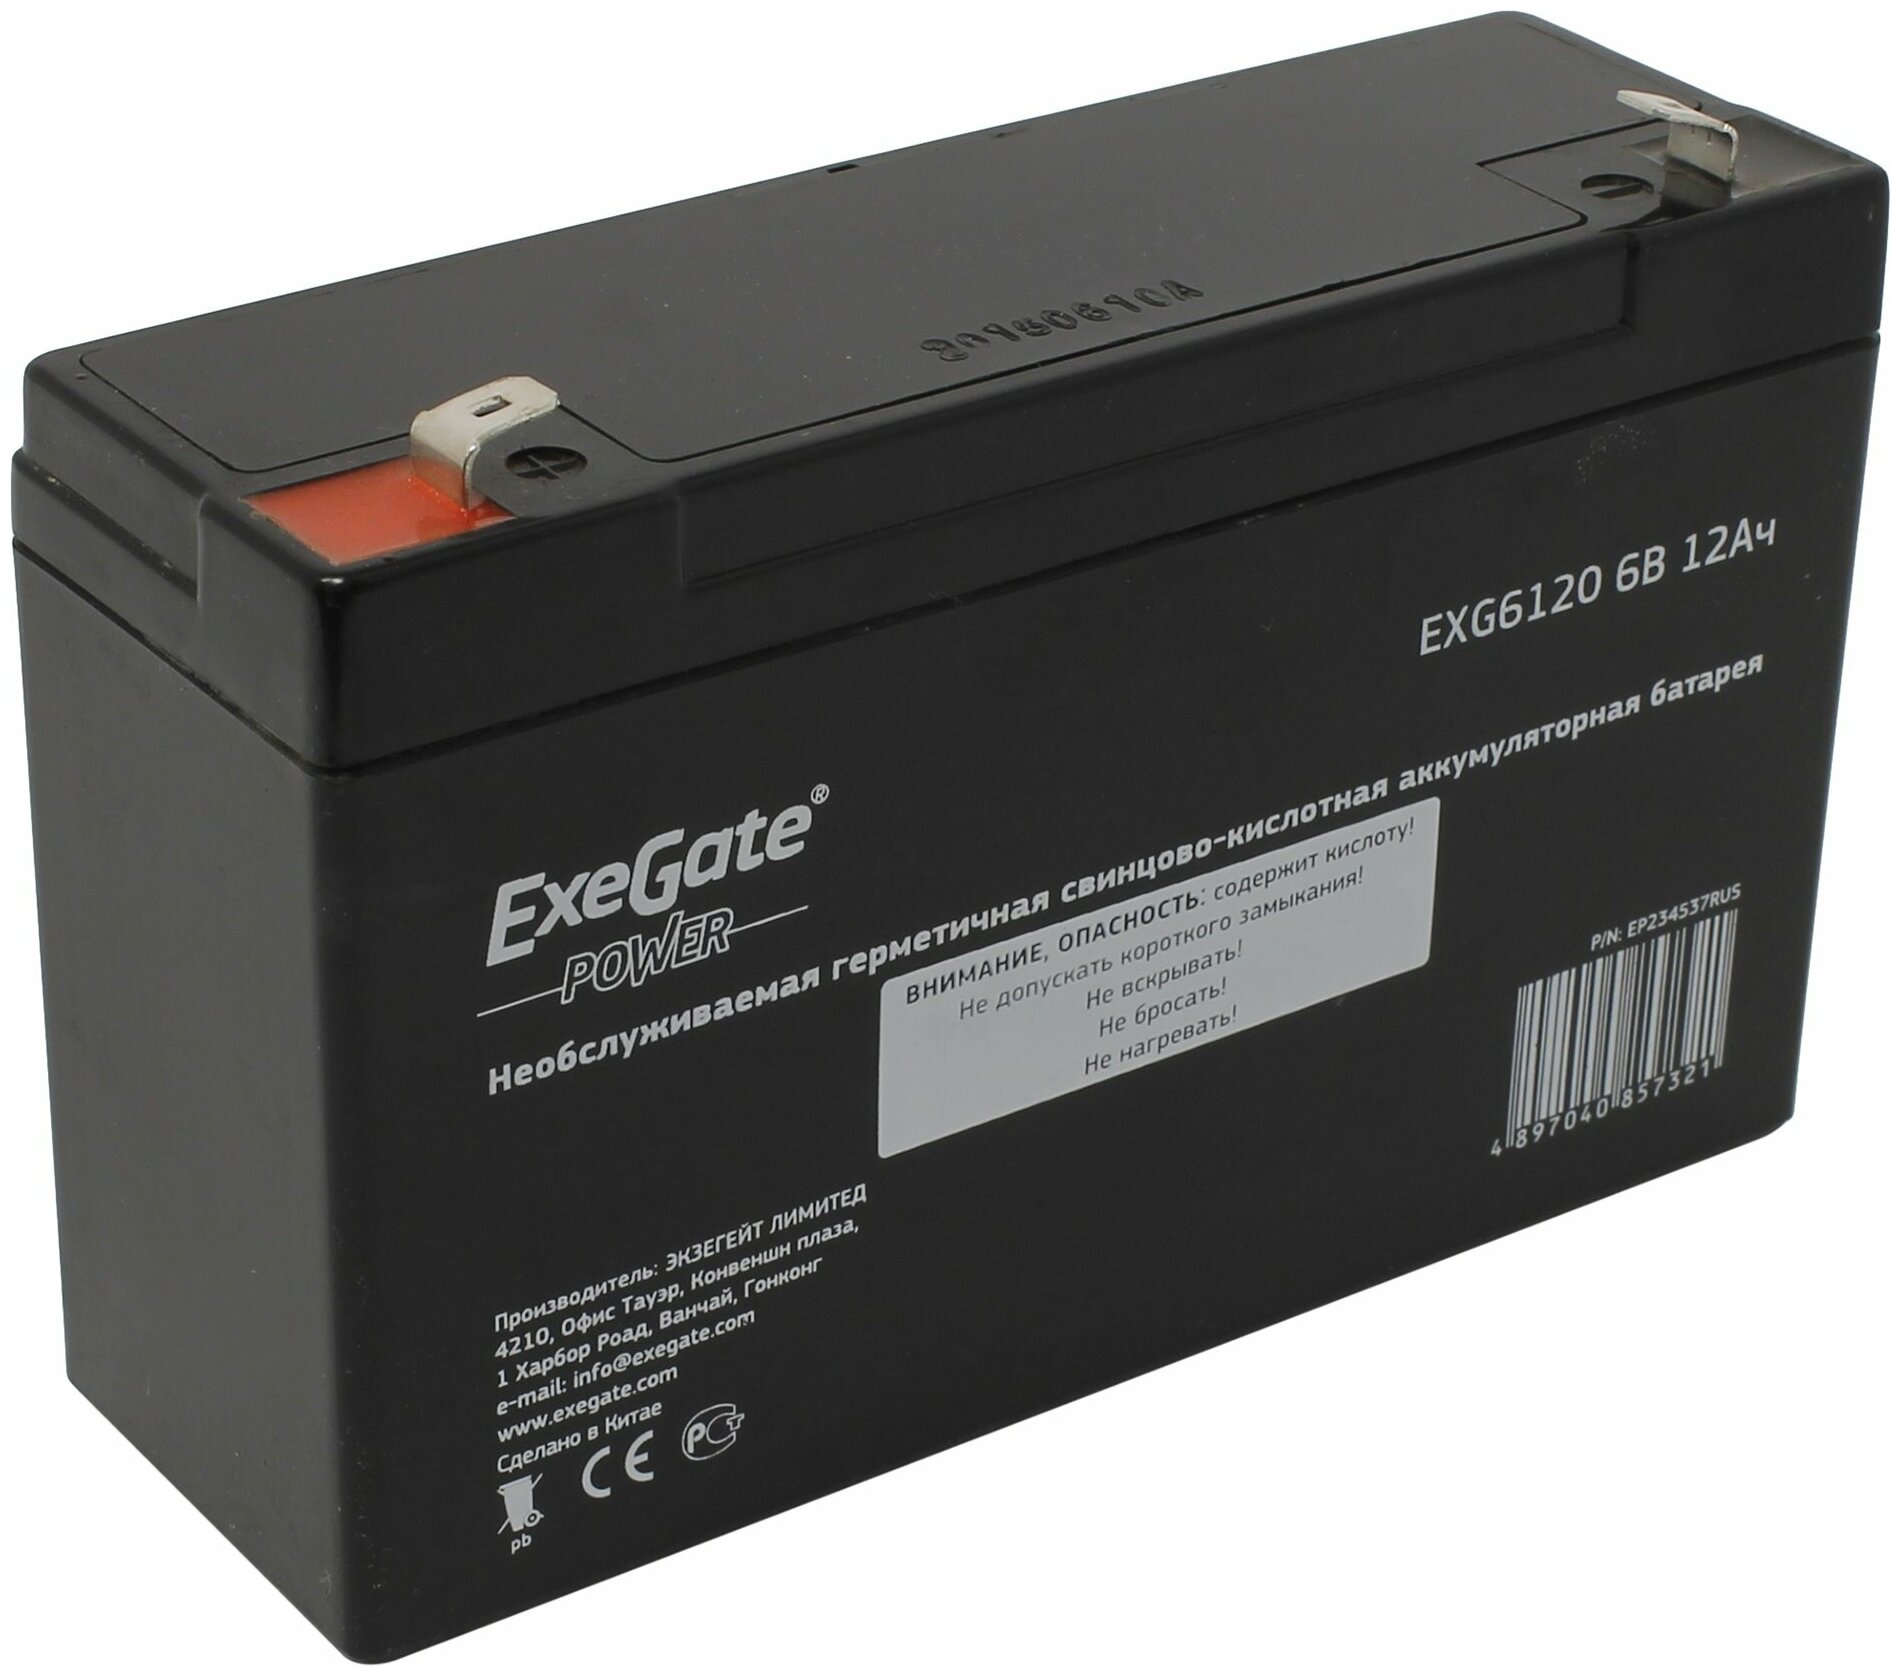 Батарея Exegate 6V 12Ah EXG6120 - фото №1